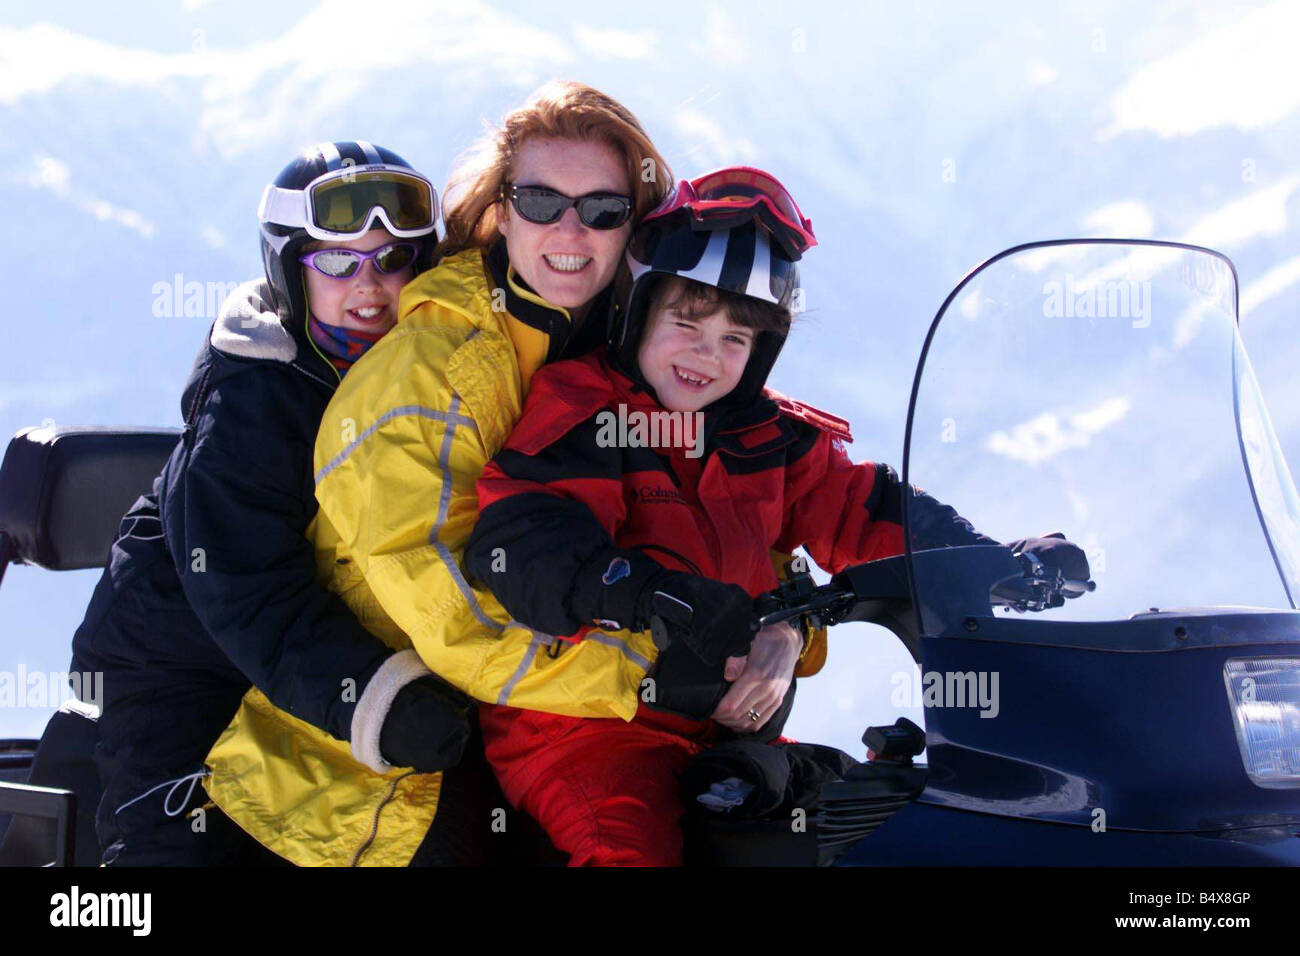 HERZOGIN von YORK Sarah Ferguson Februar 1999 mit Prinzessin BEATRICE und EUGENIE auf dem Ski-Fahrrad im Schweizer Ferienort Verbier Urlaub Stockfoto